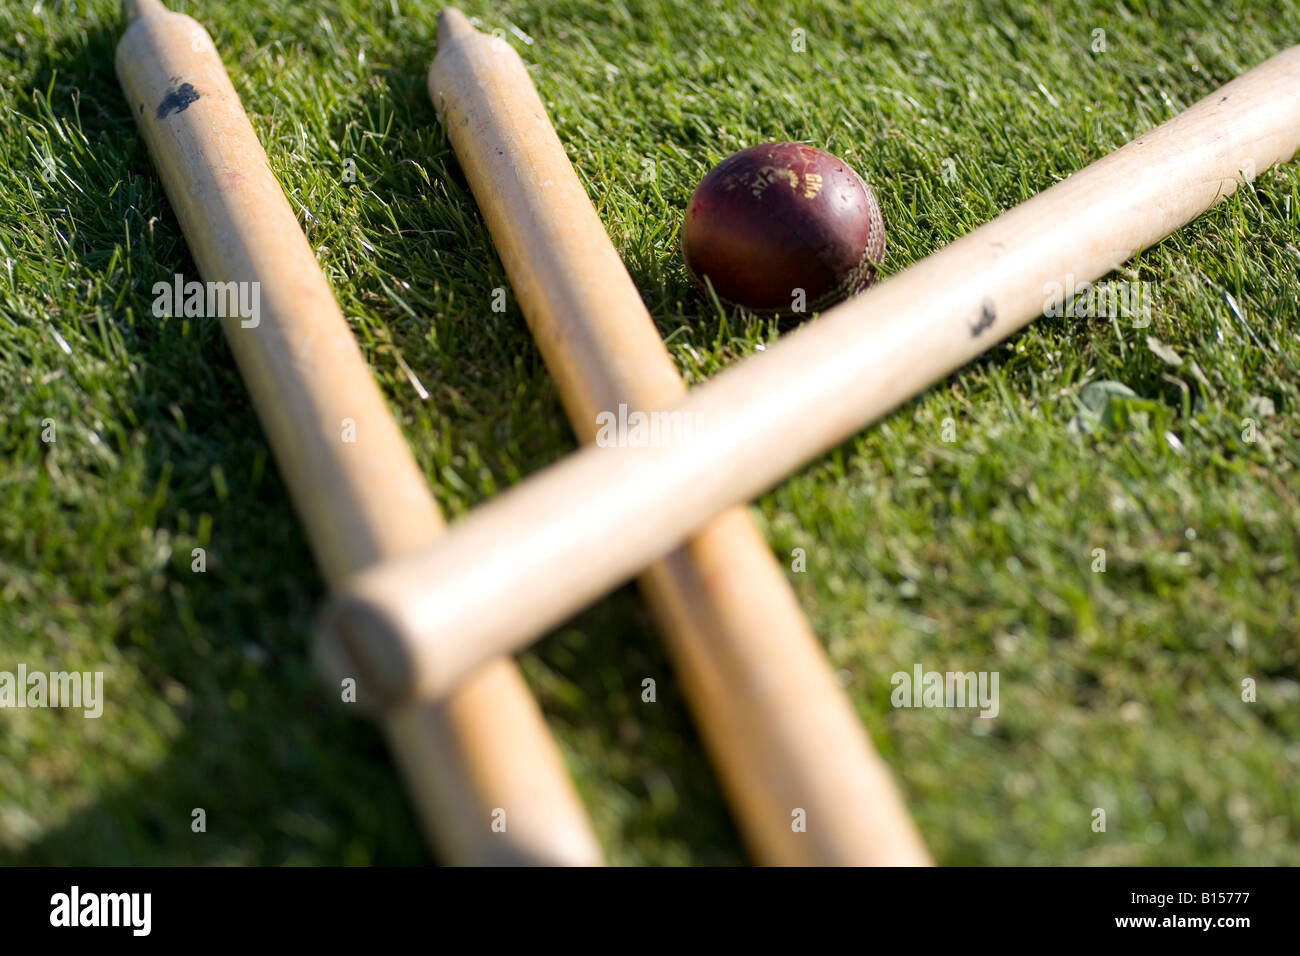 Les souches et de cricket ball se coucher sur l'herbe Banque D'Images